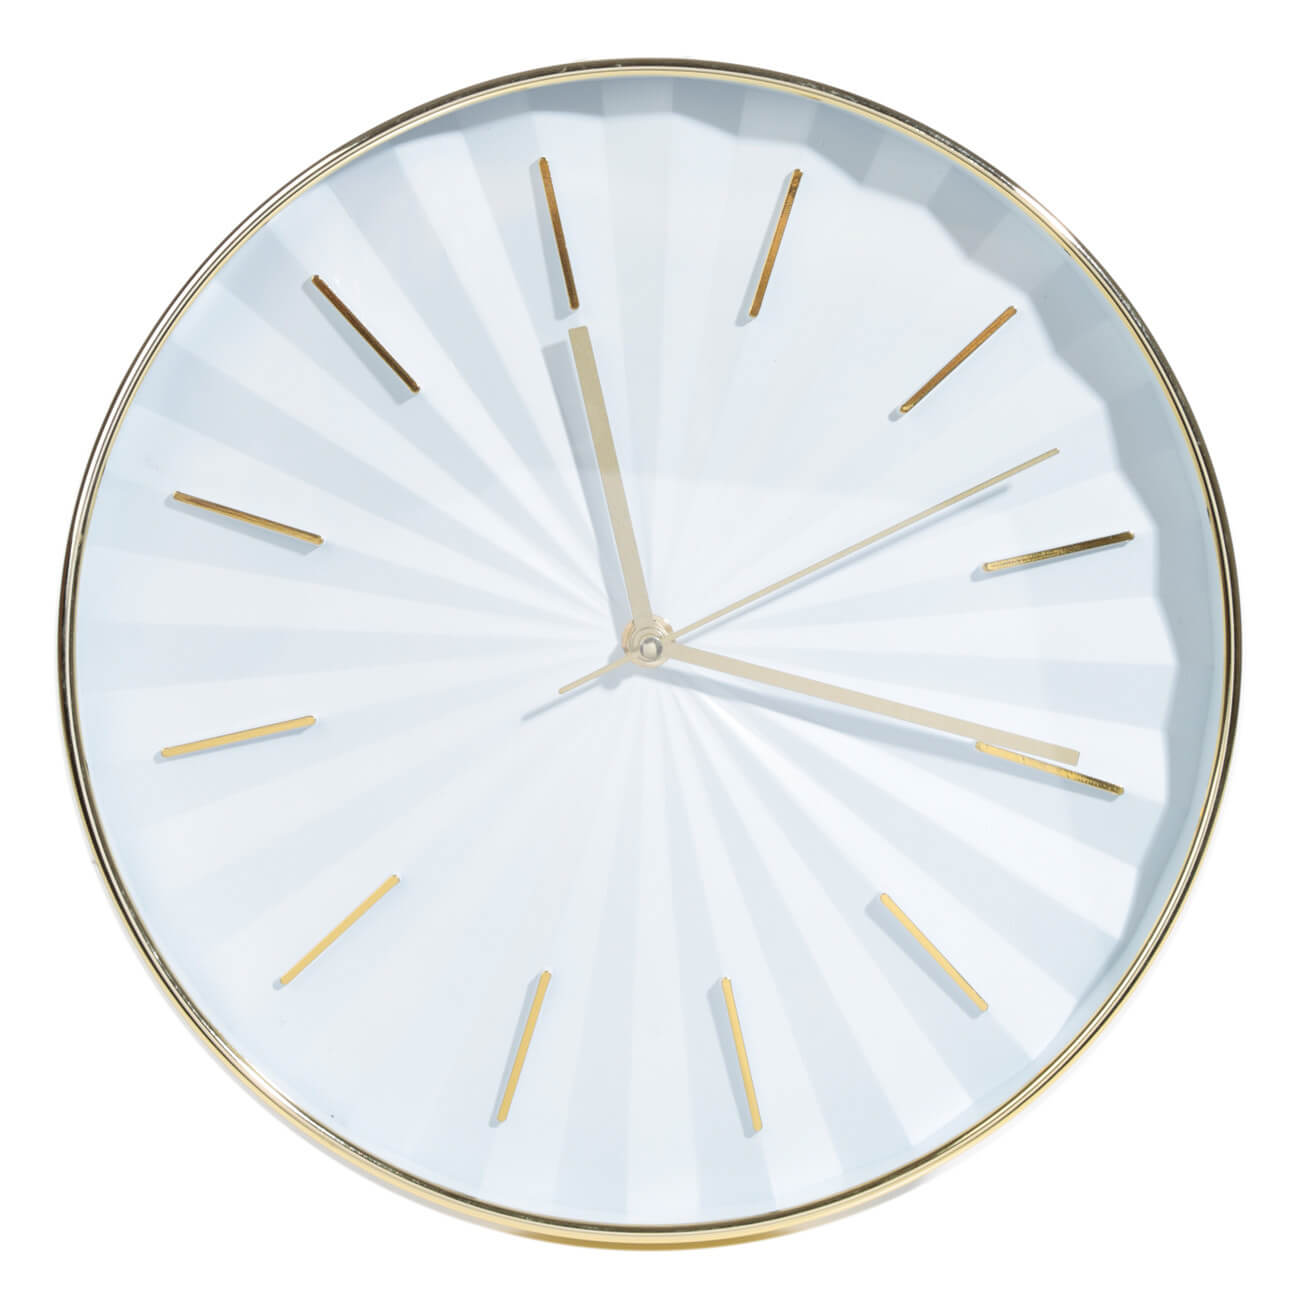 Часы настенные, 30 см, пластик, круглые, золотисто-белые, Fantastic gold часы настенные xy166822